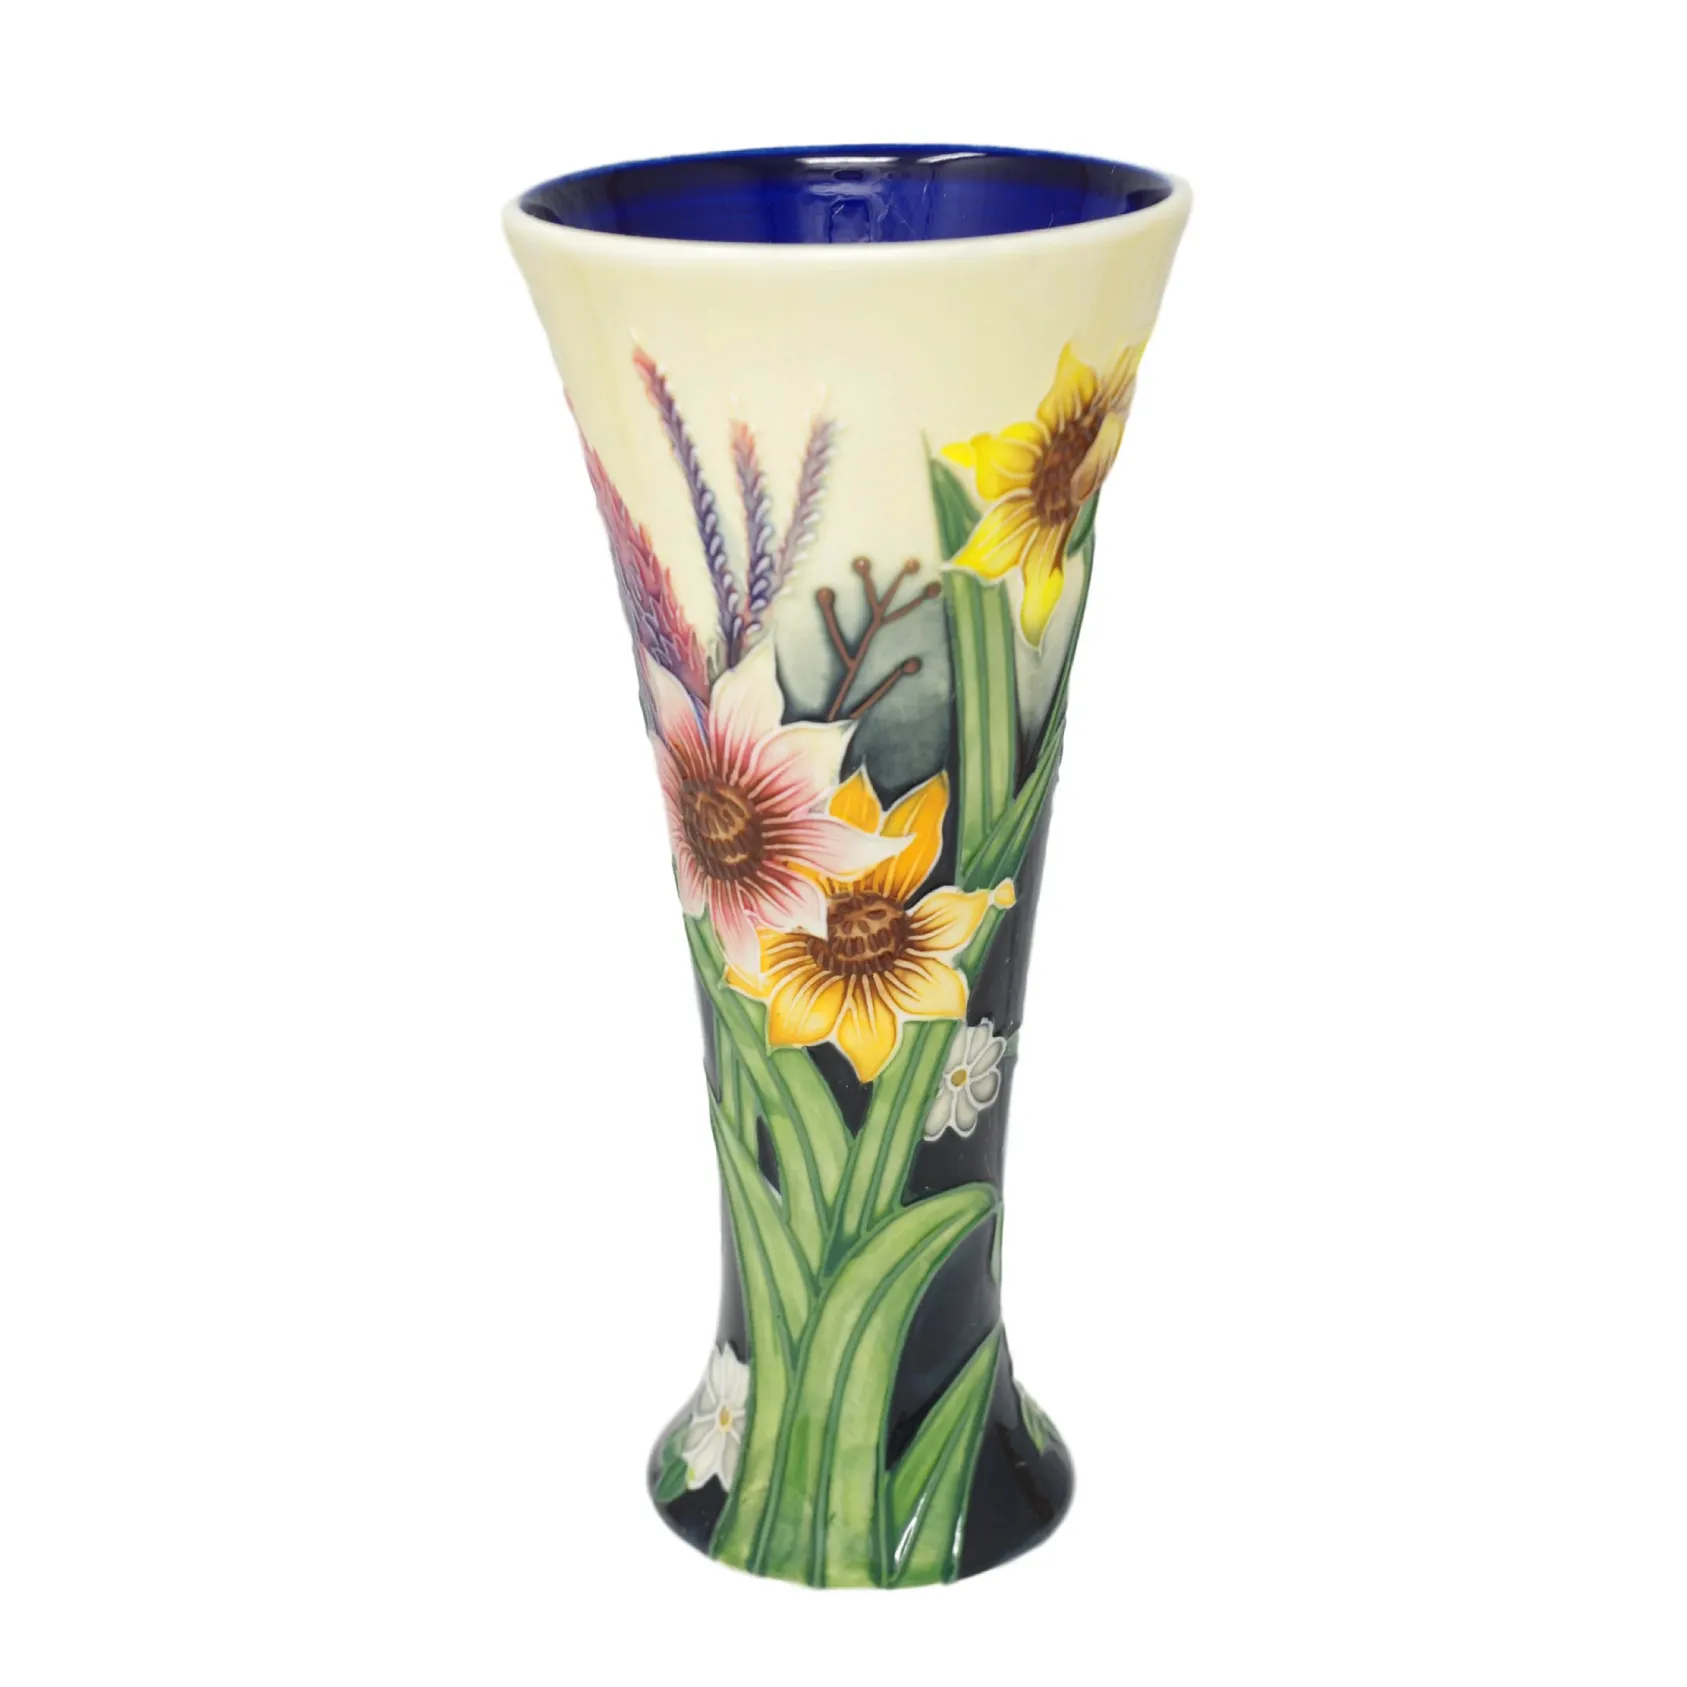 Sunflower pattern design pottery vase tube lining method by artisans